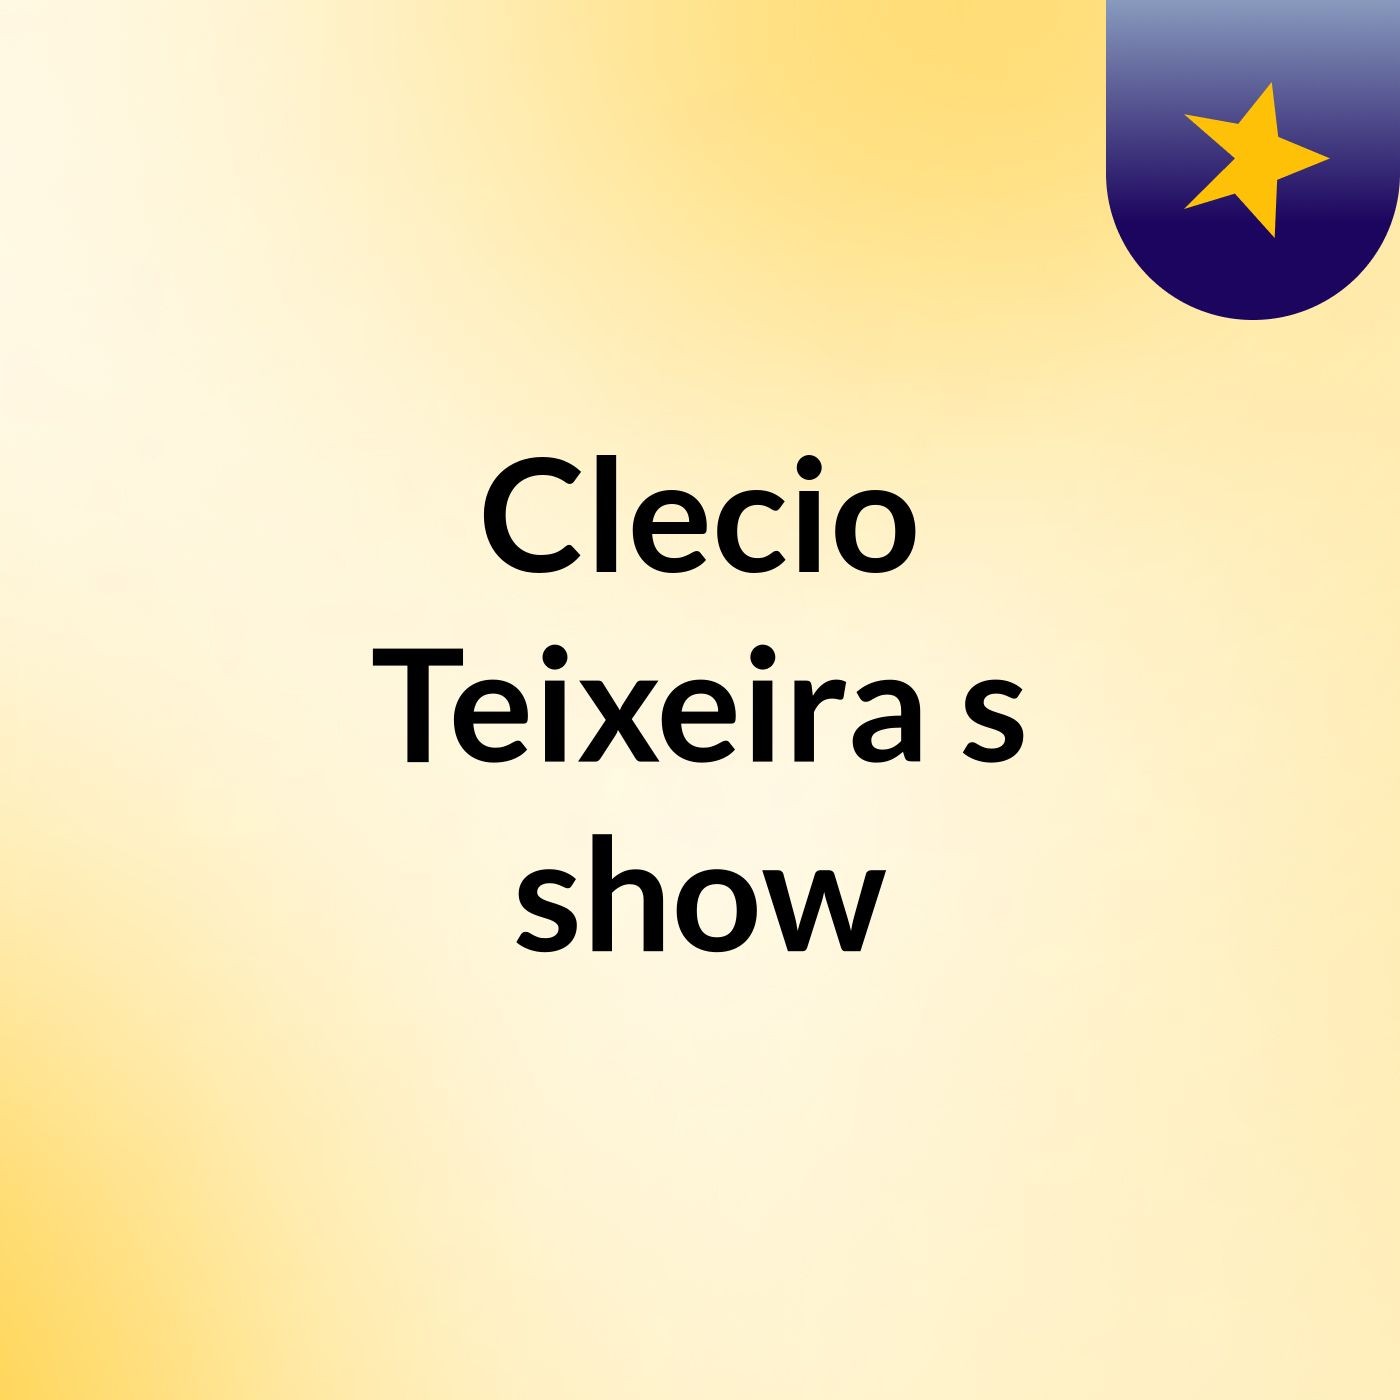 Clecio Teixeira's show